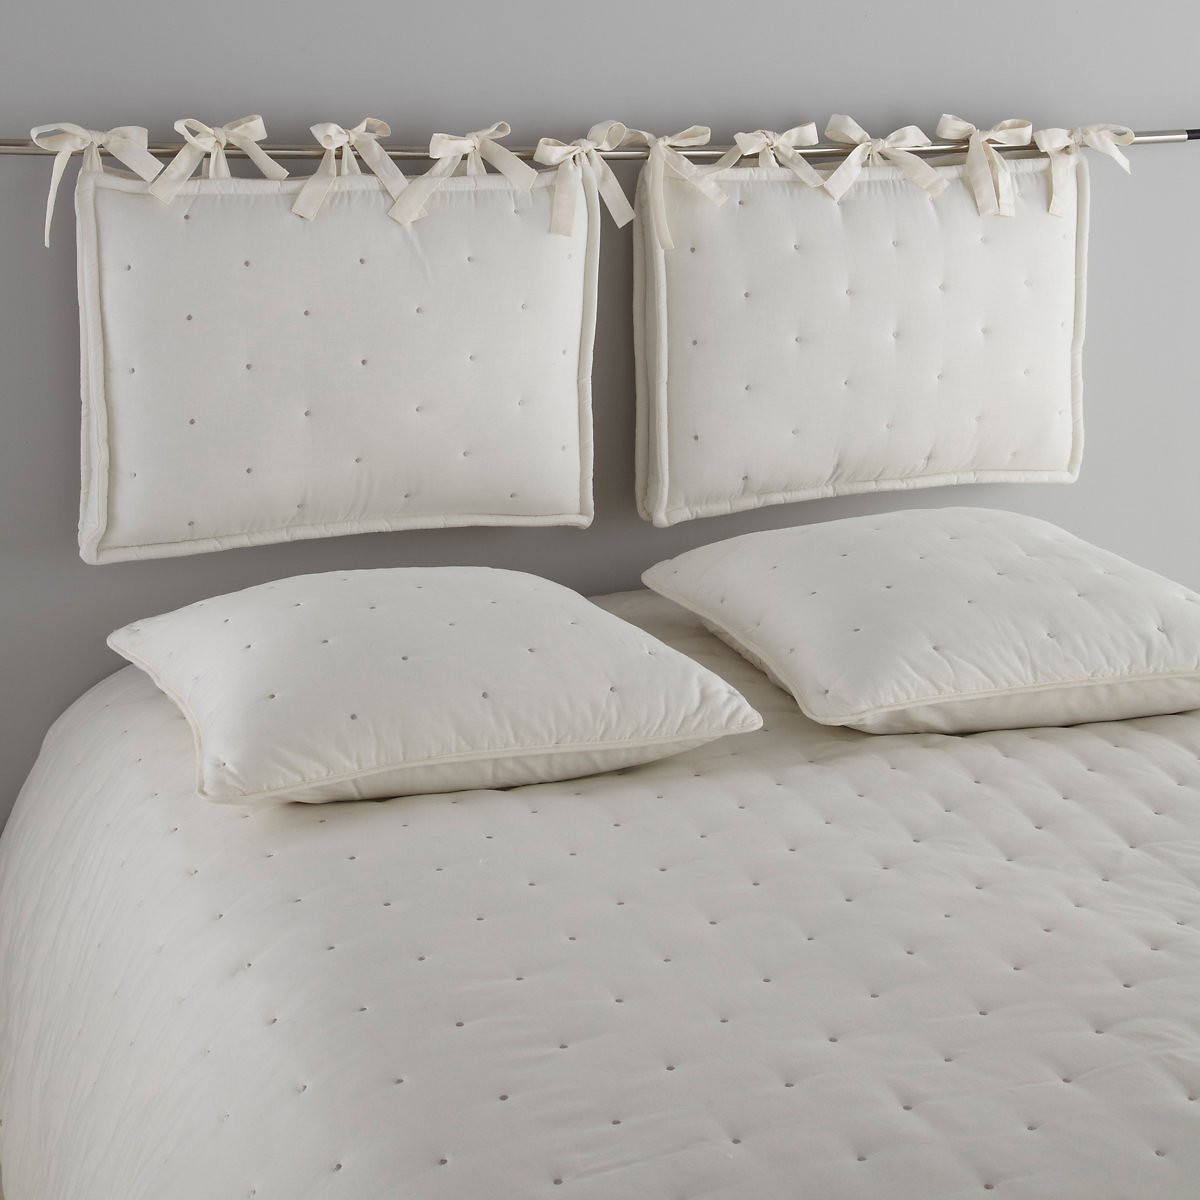 мягкие подушки для кровати